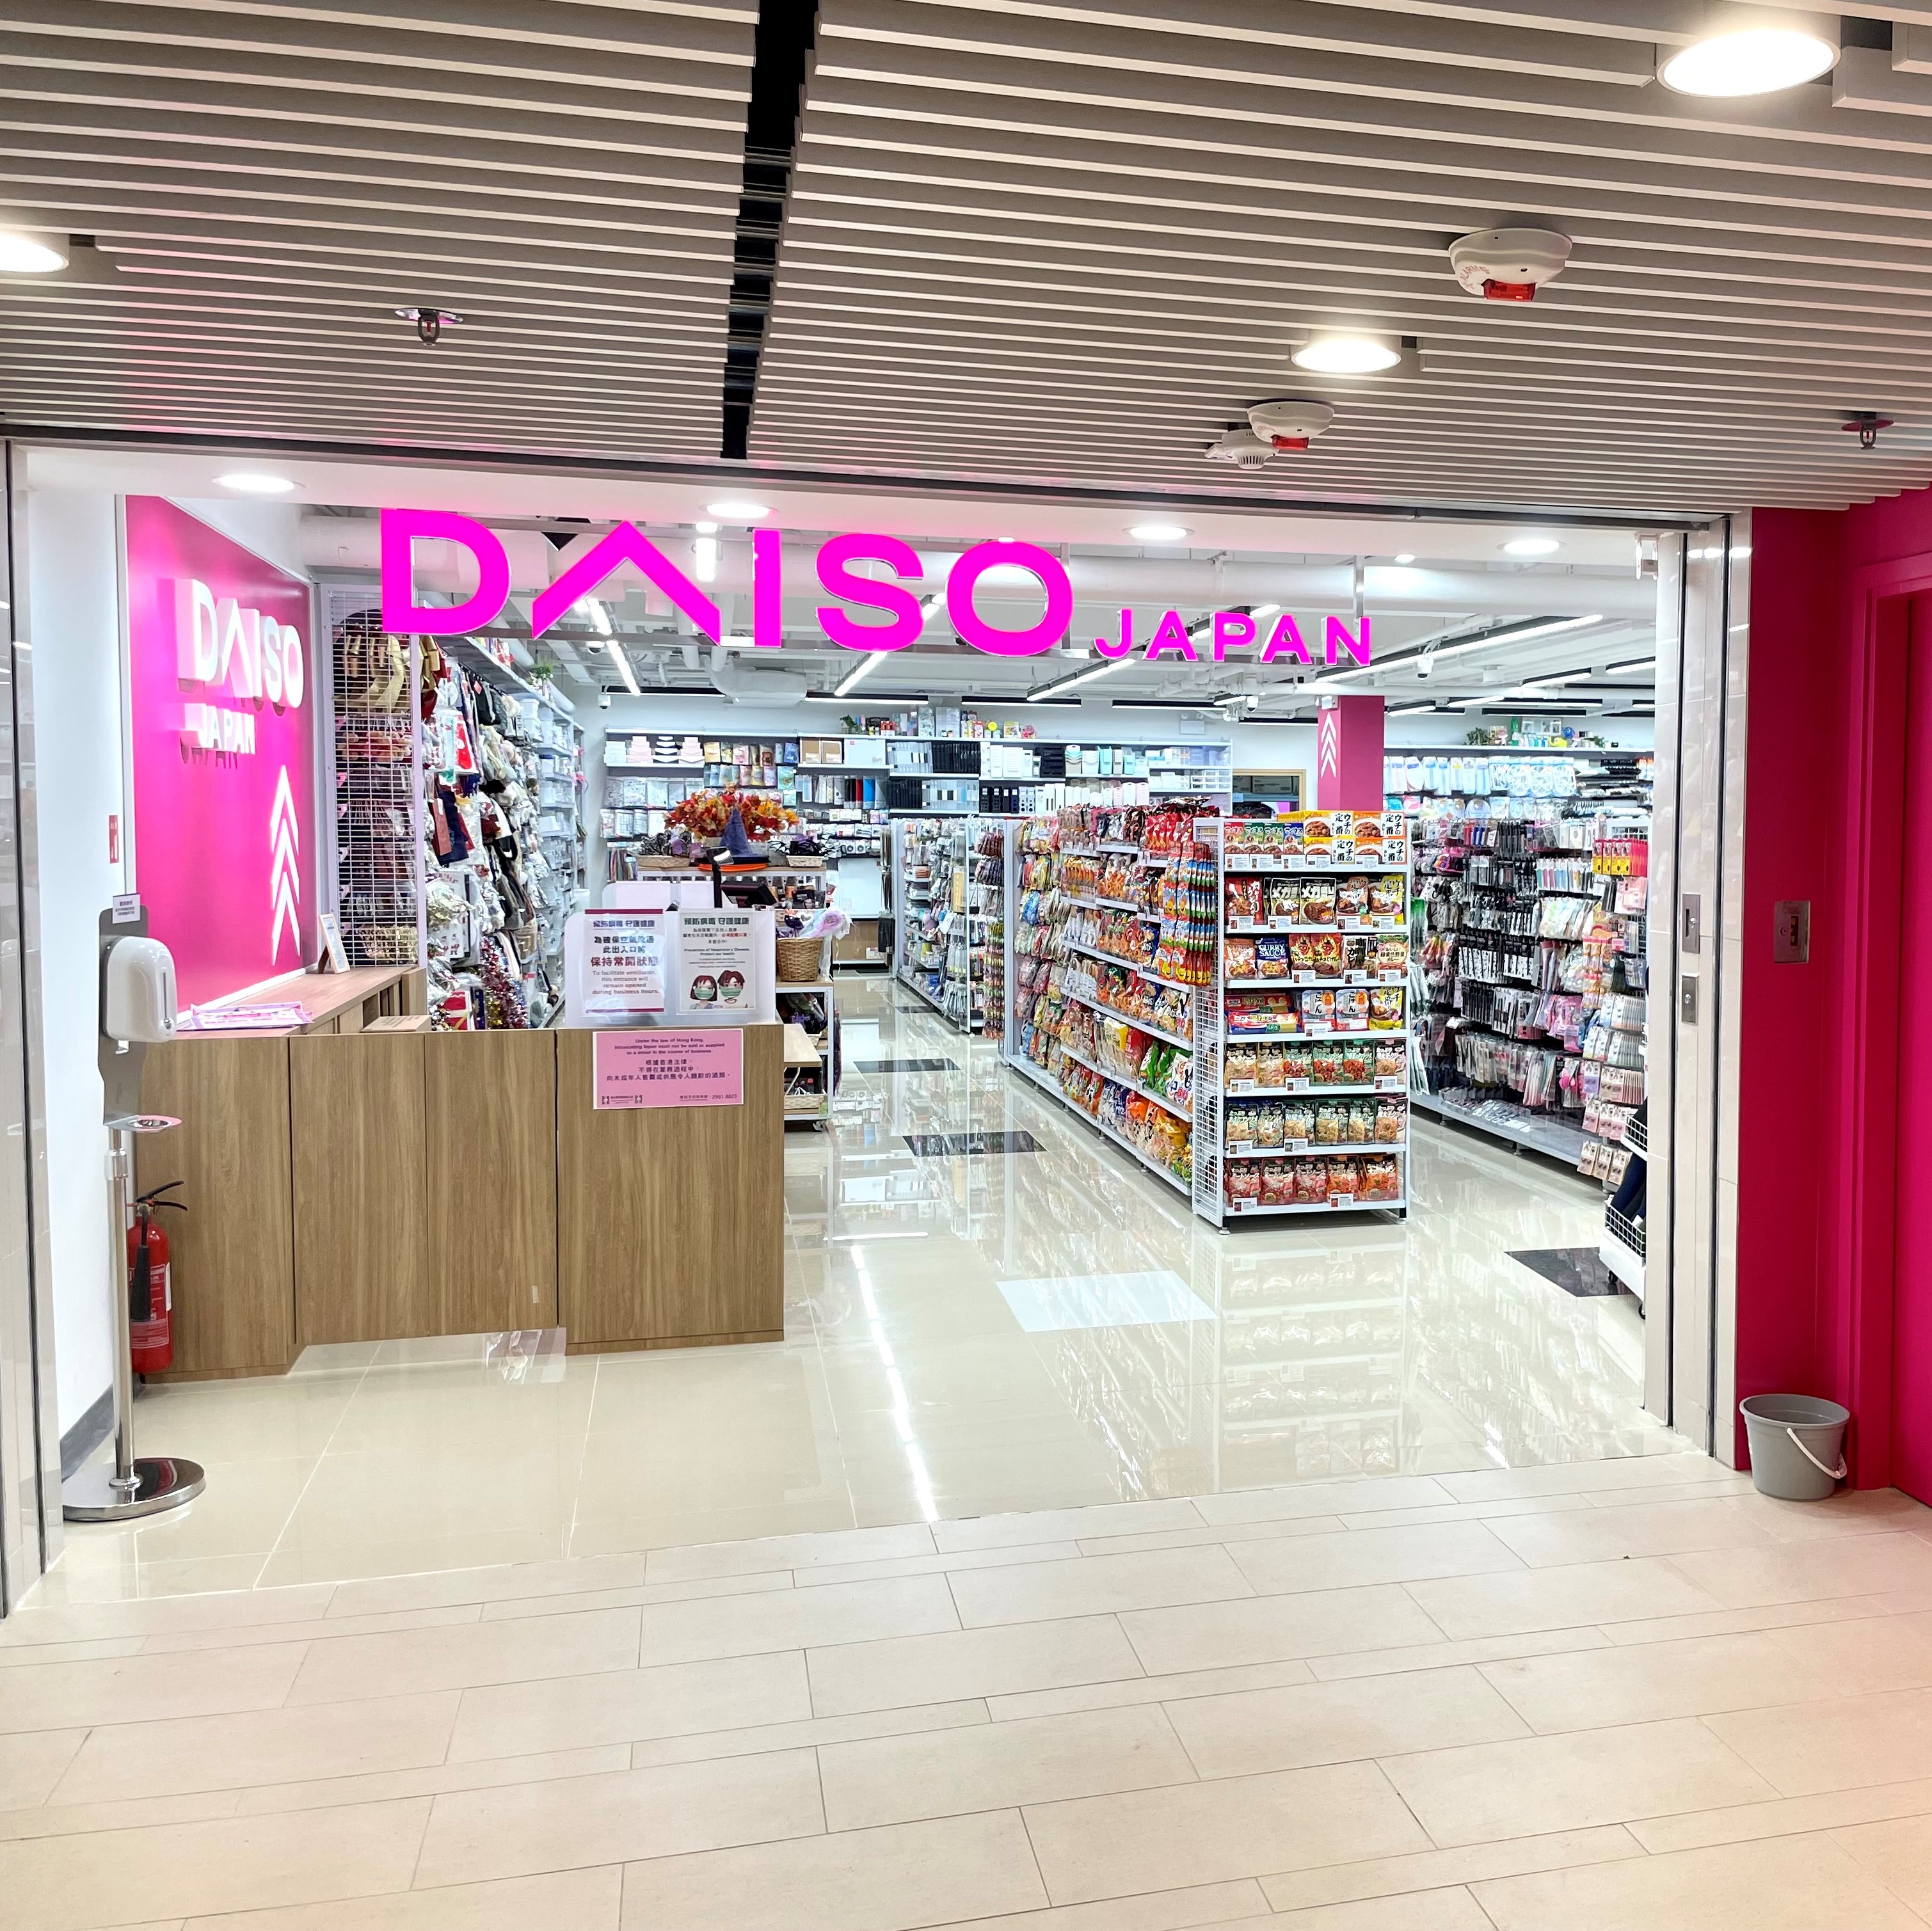 Daiso Japan 愛民店